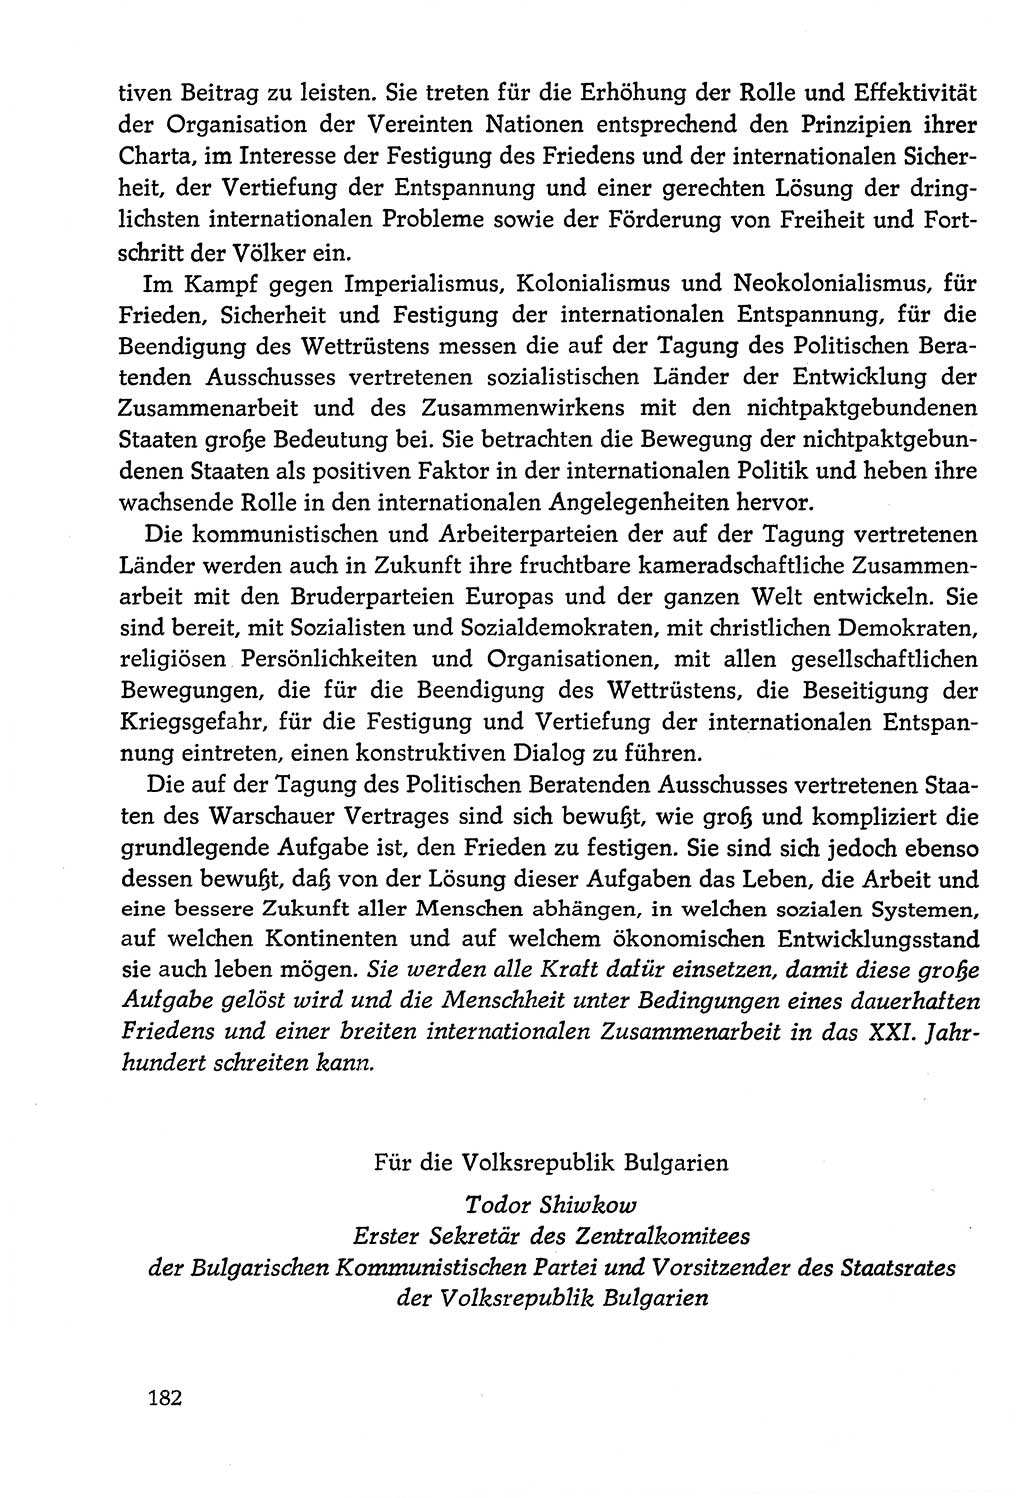 Dokumente der Sozialistischen Einheitspartei Deutschlands (SED) [Deutsche Demokratische Republik (DDR)] 1978-1979, Seite 182 (Dok. SED DDR 1978-1979, S. 182)